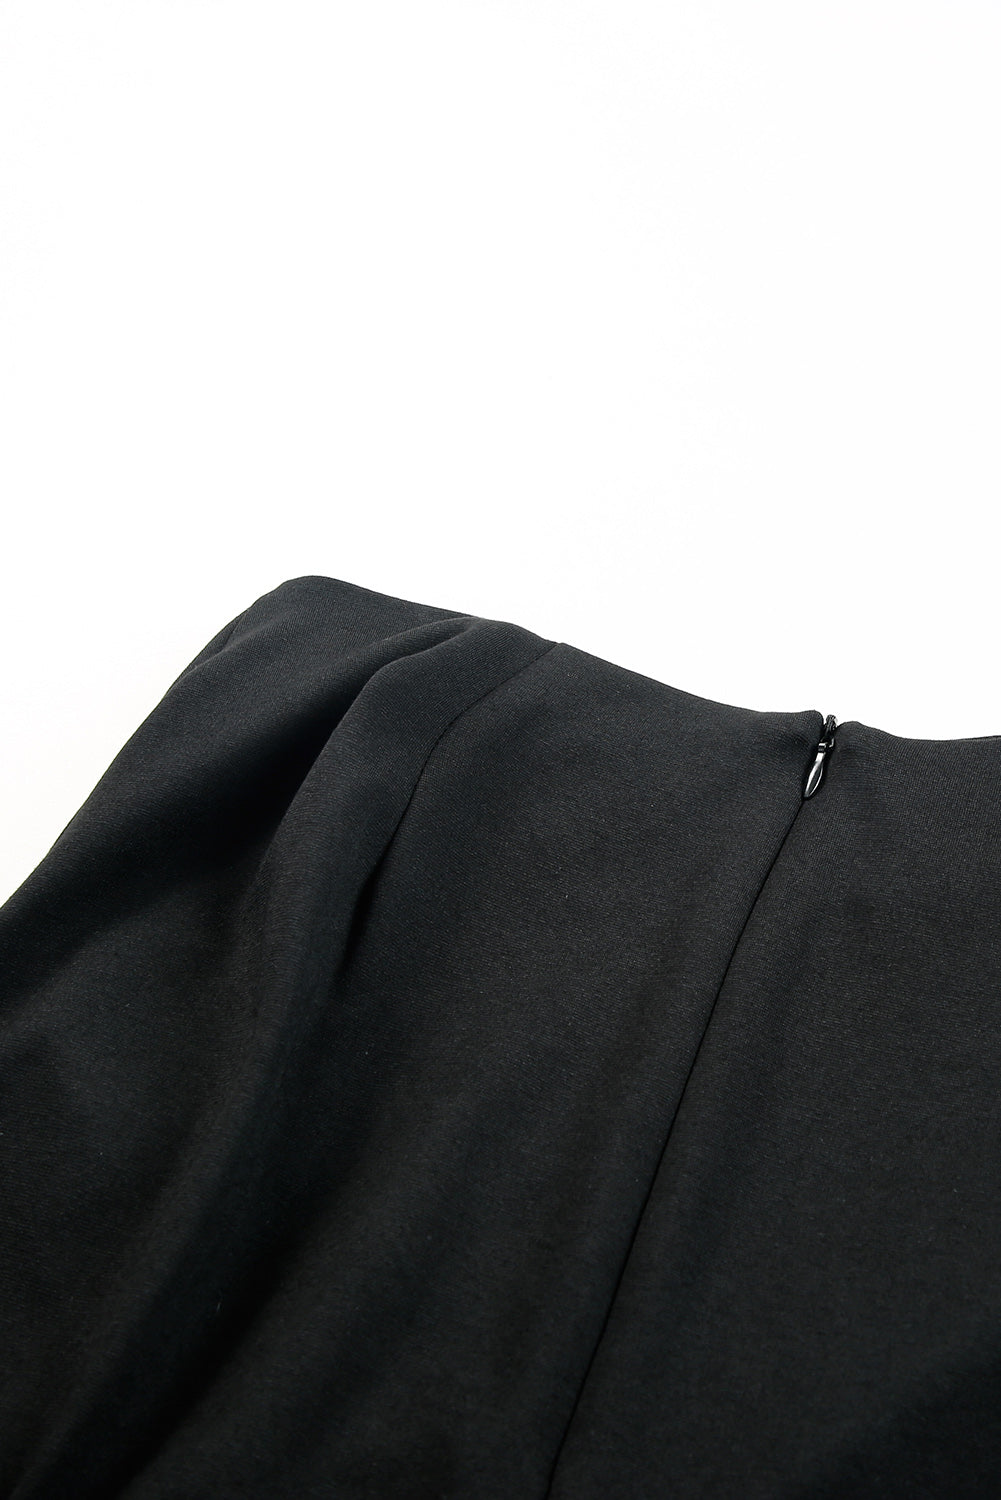 Black Ruched Buttons Embellished Side Split Pencil Midi Skirt